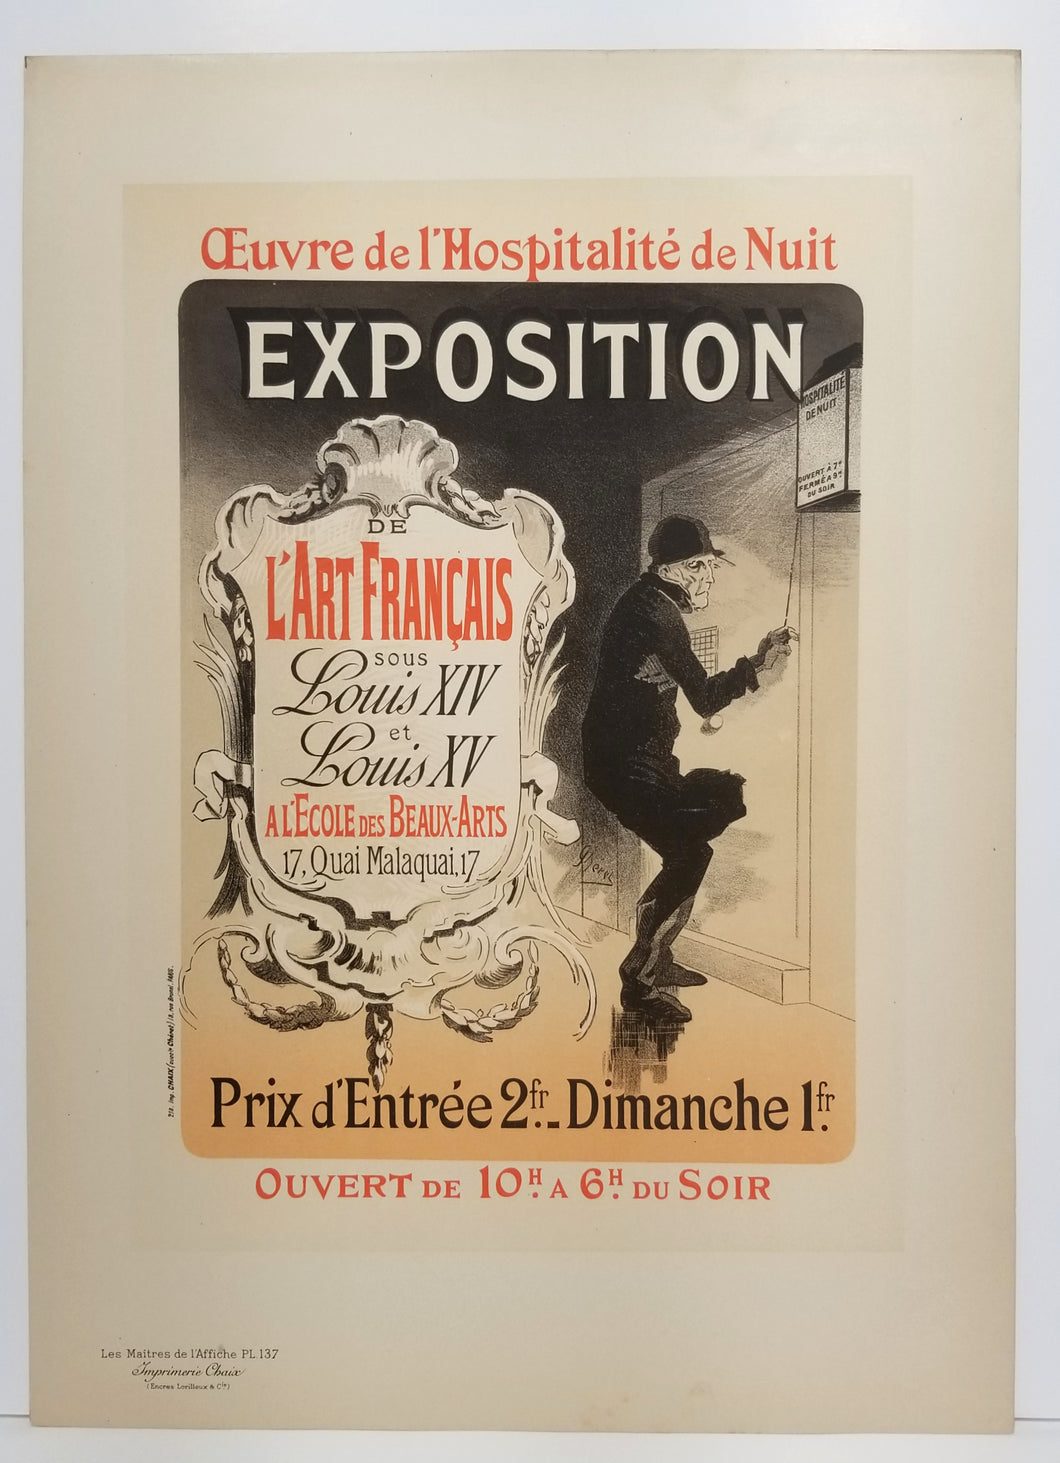 Oeuvre de l'Hospitalité de Nuit. 1898.